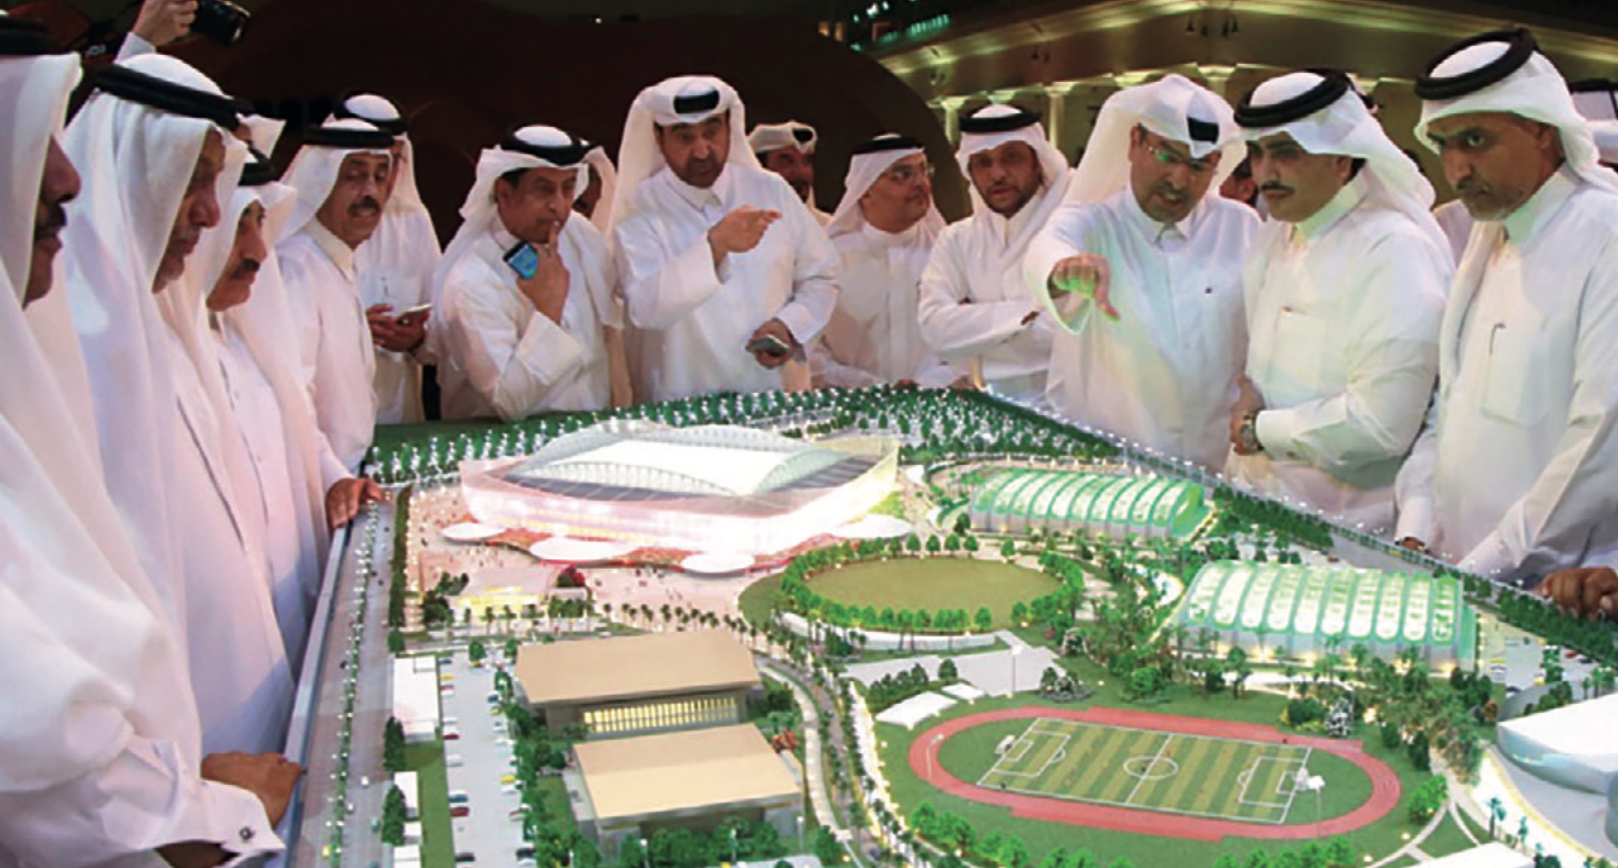 2022 in Qatar, tra stadi e polemiche - Moked